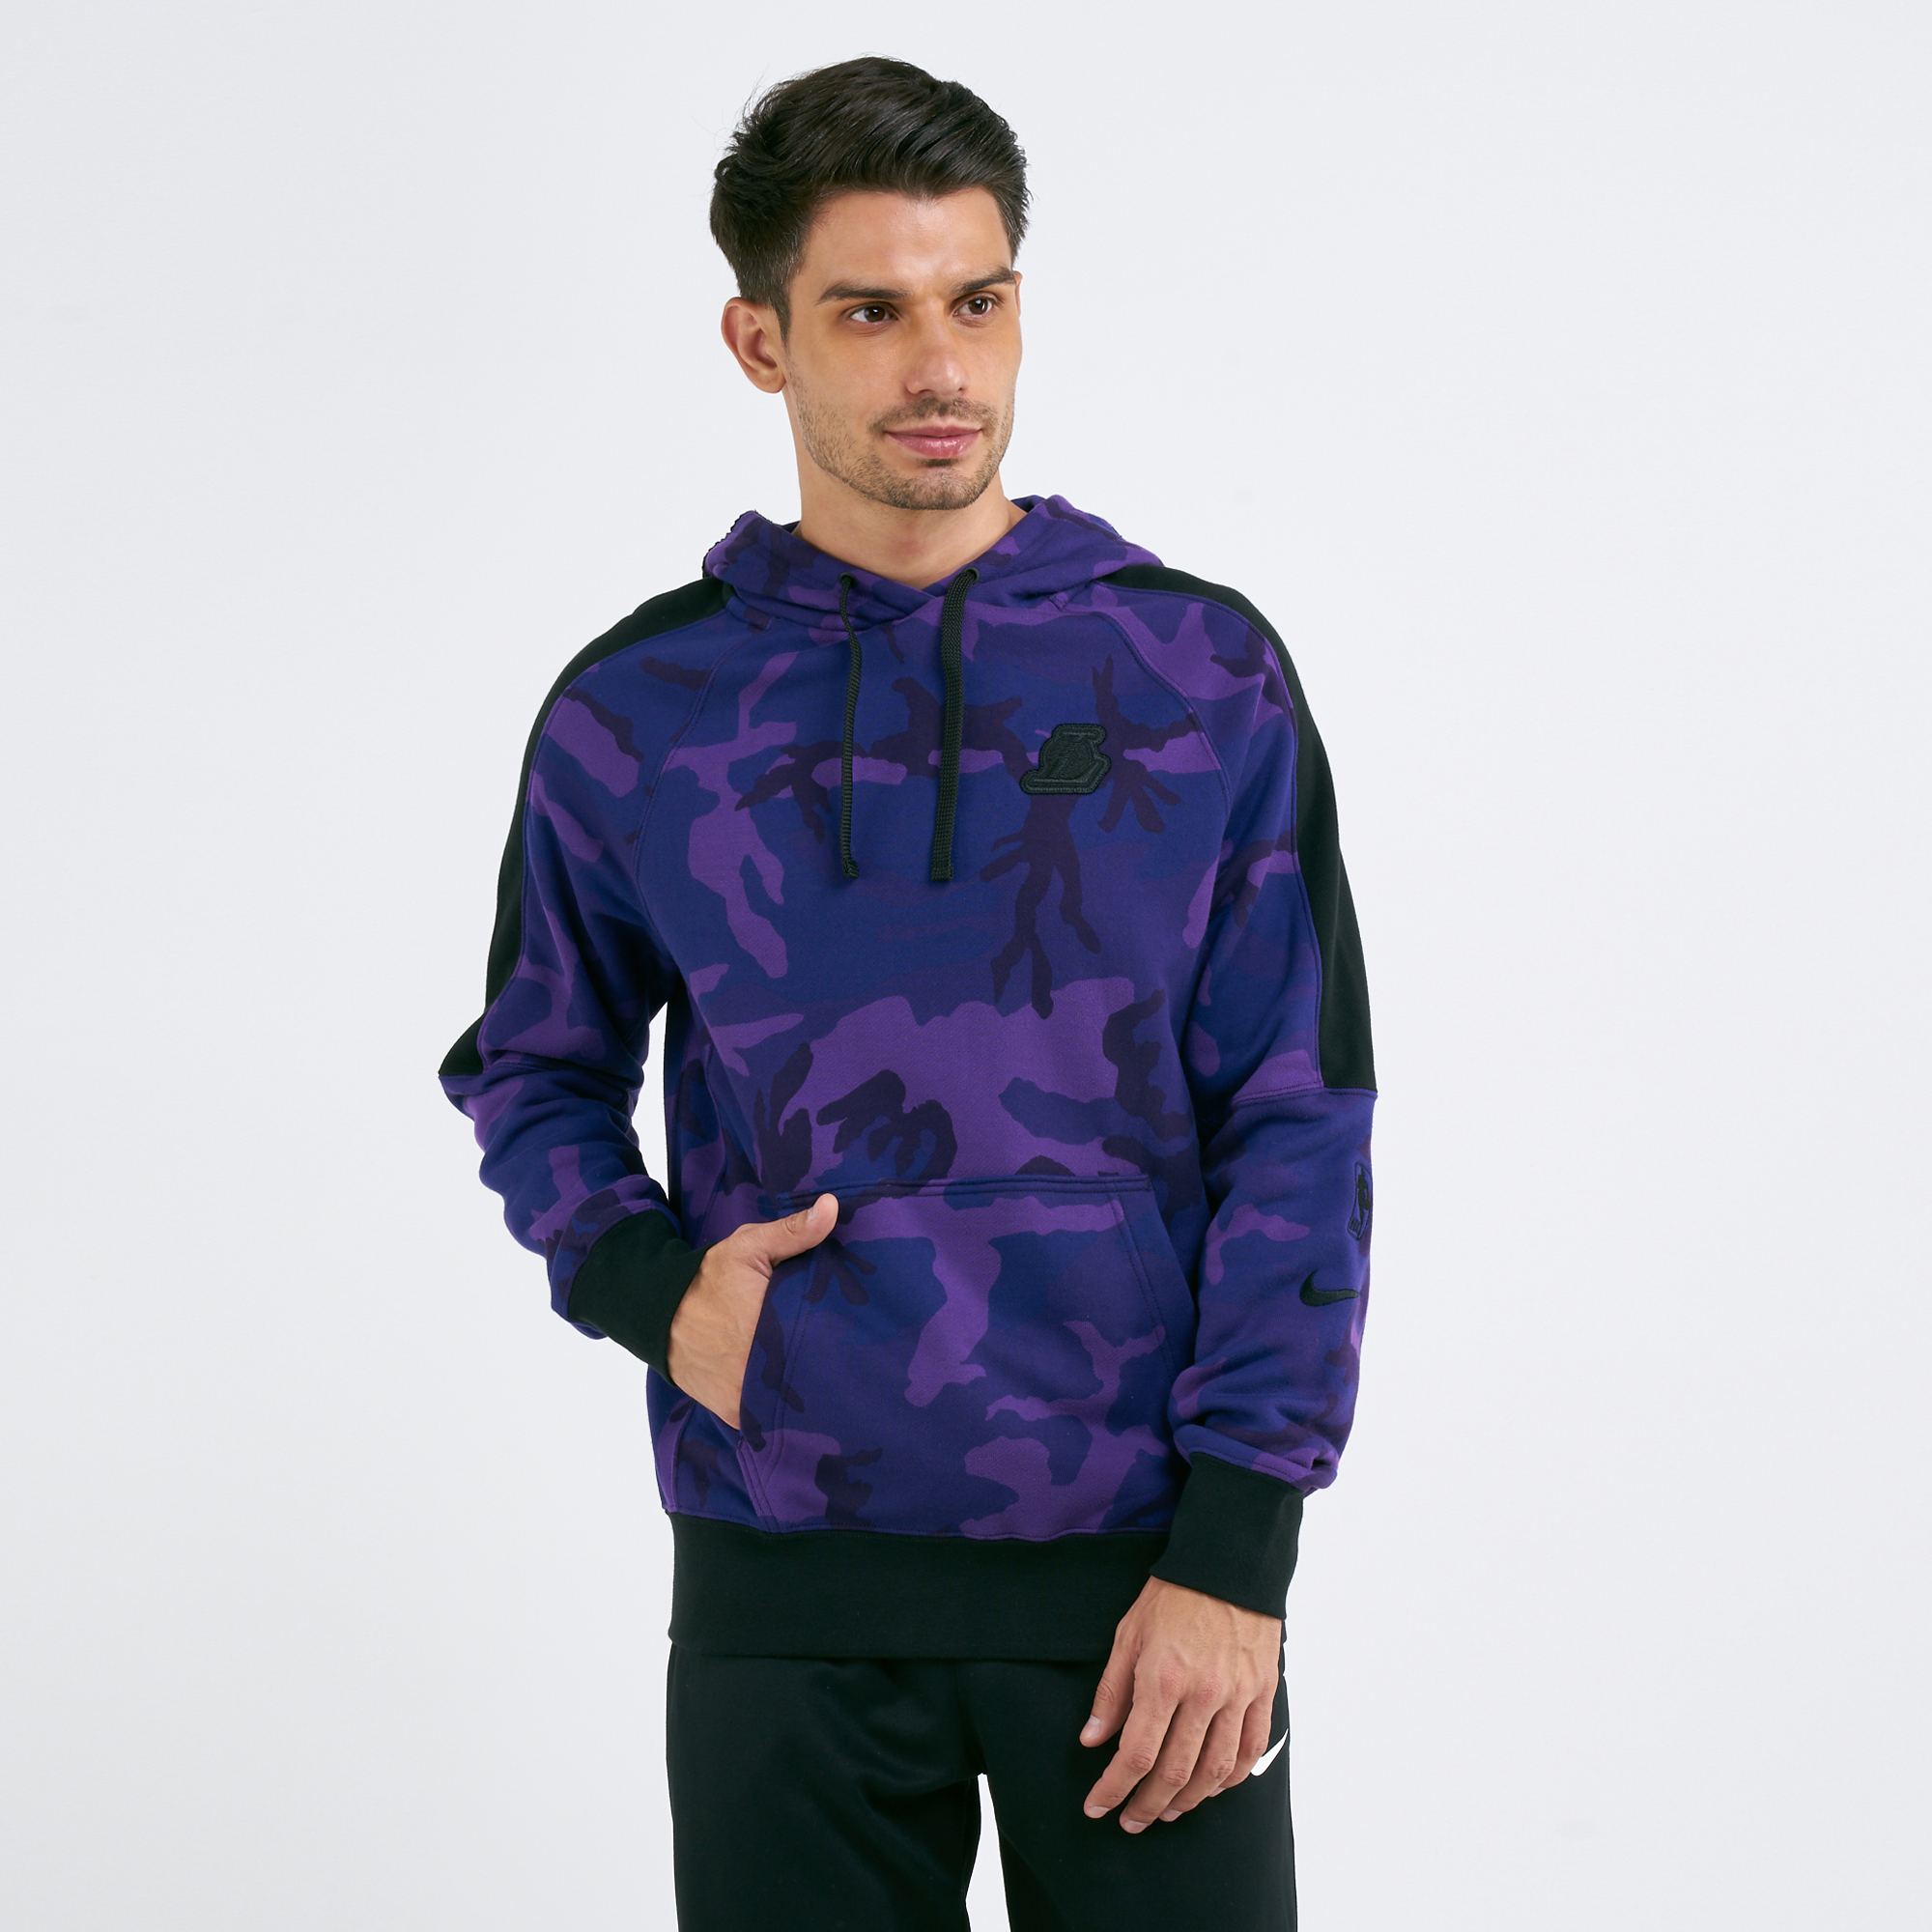 وضوح purple camo nike hoodie 